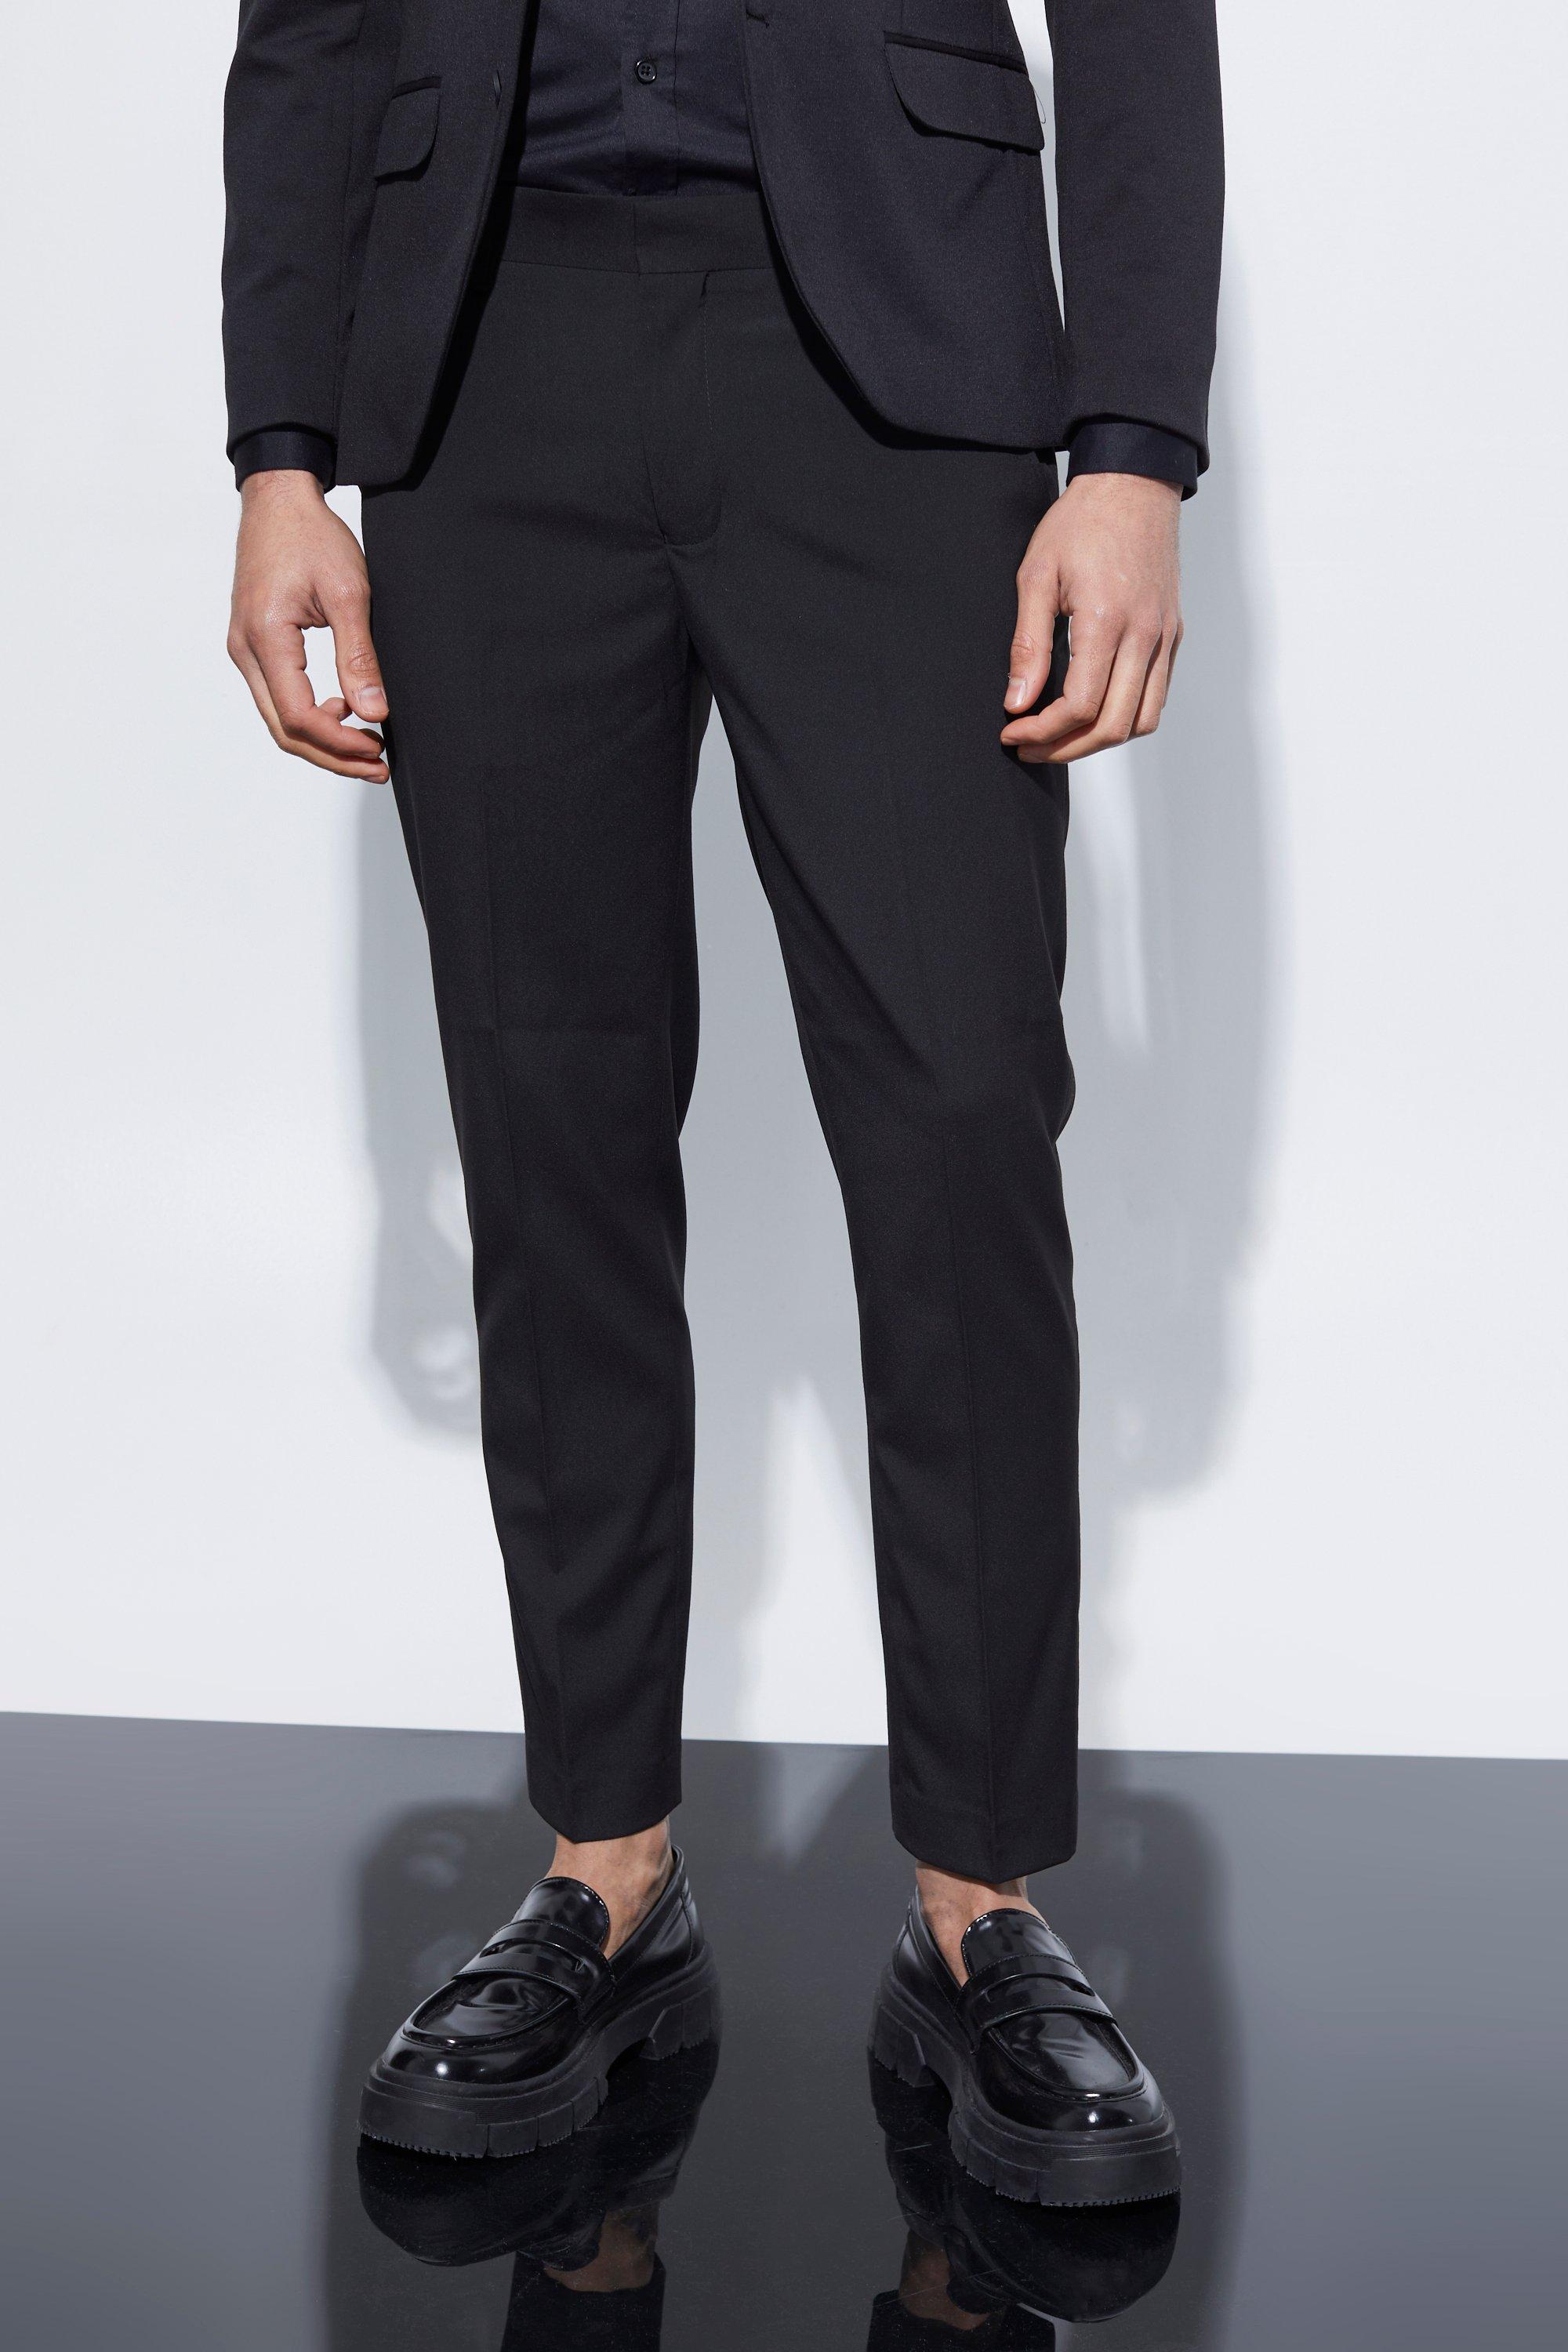 pantalon de costume skinny court homme - noir - 36l, noir